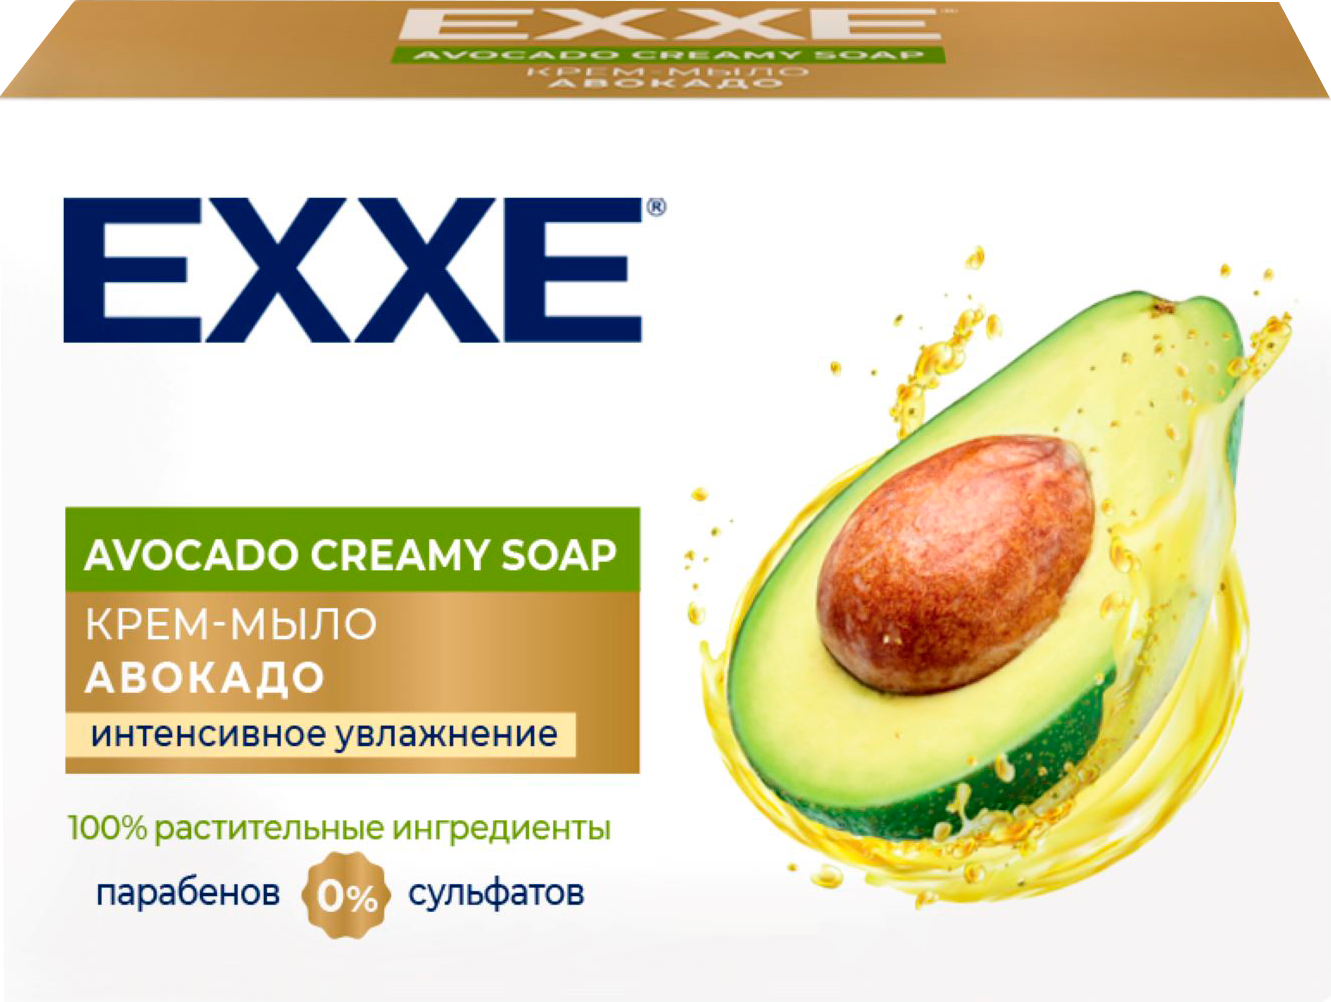 Крем-мыло Exxe Авокадо интенсивное увлажнение